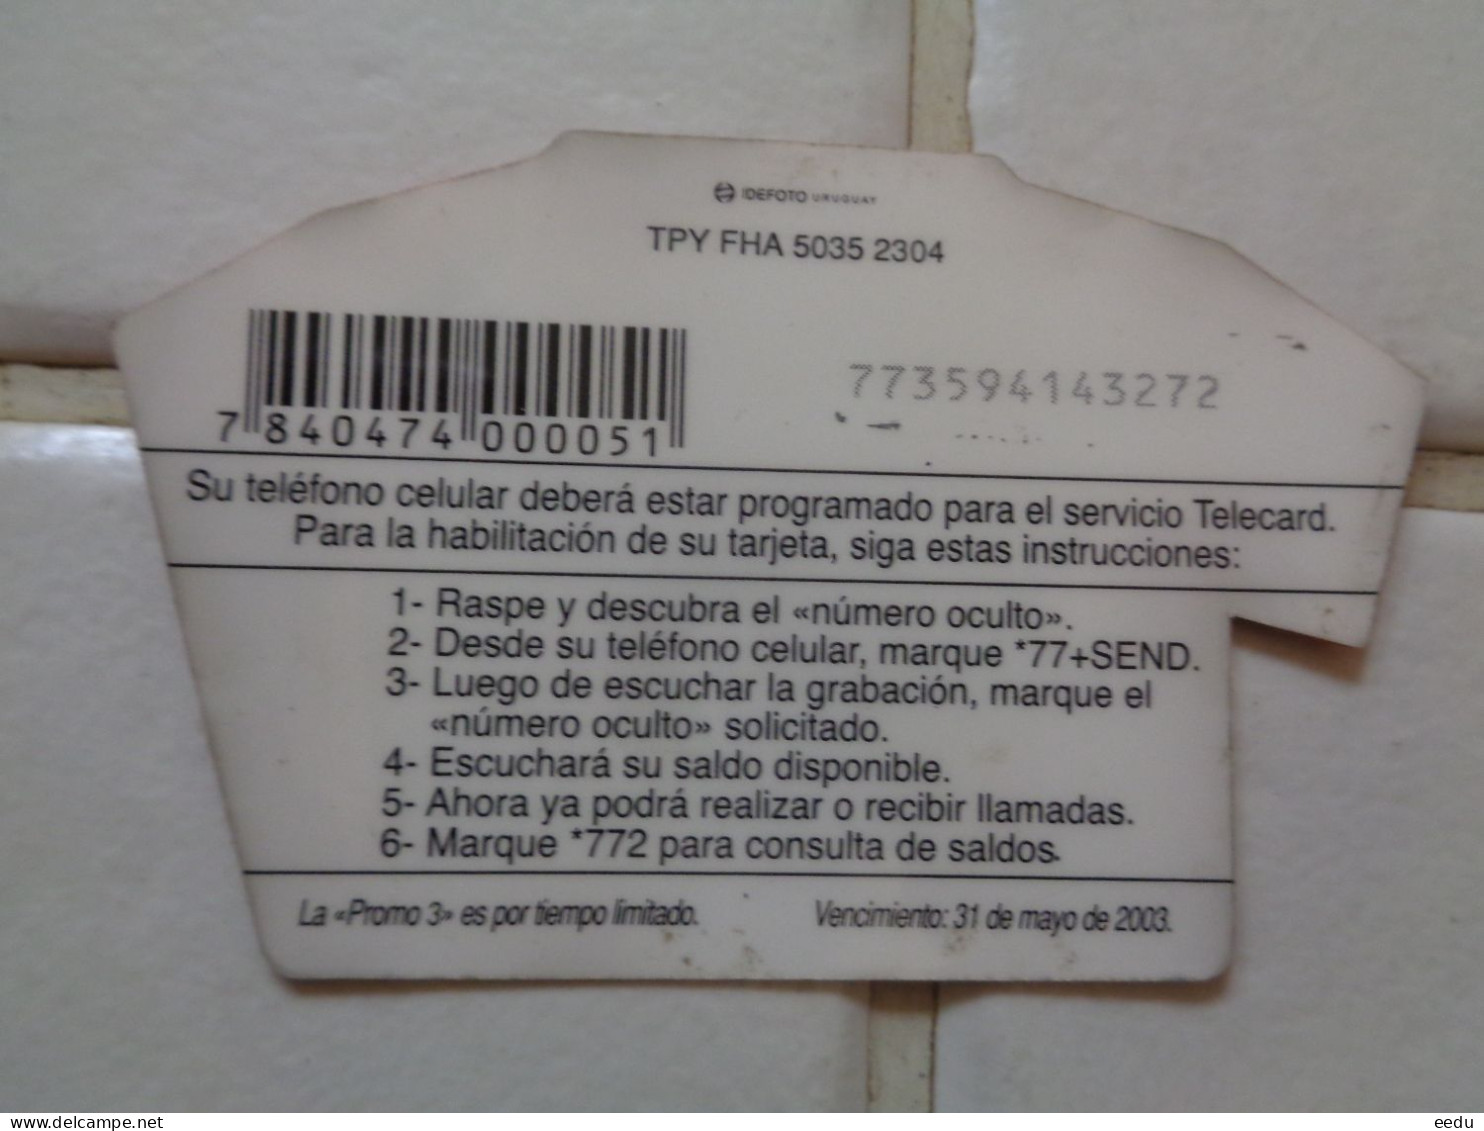 Paraguay Phonecard - Paraguay